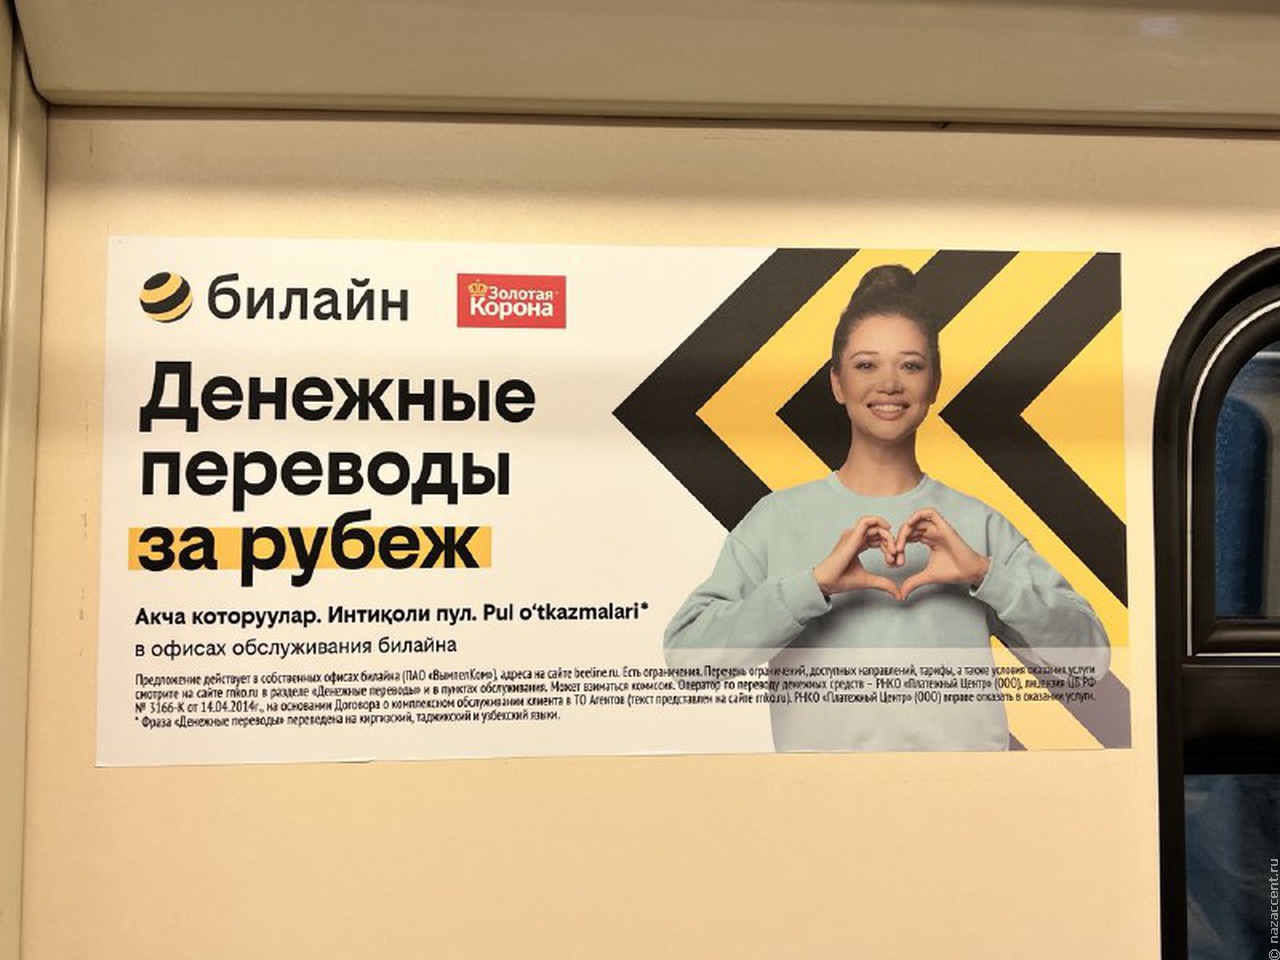 В московском метро появилась реклама на киргизском, таджикском и узбекском языках